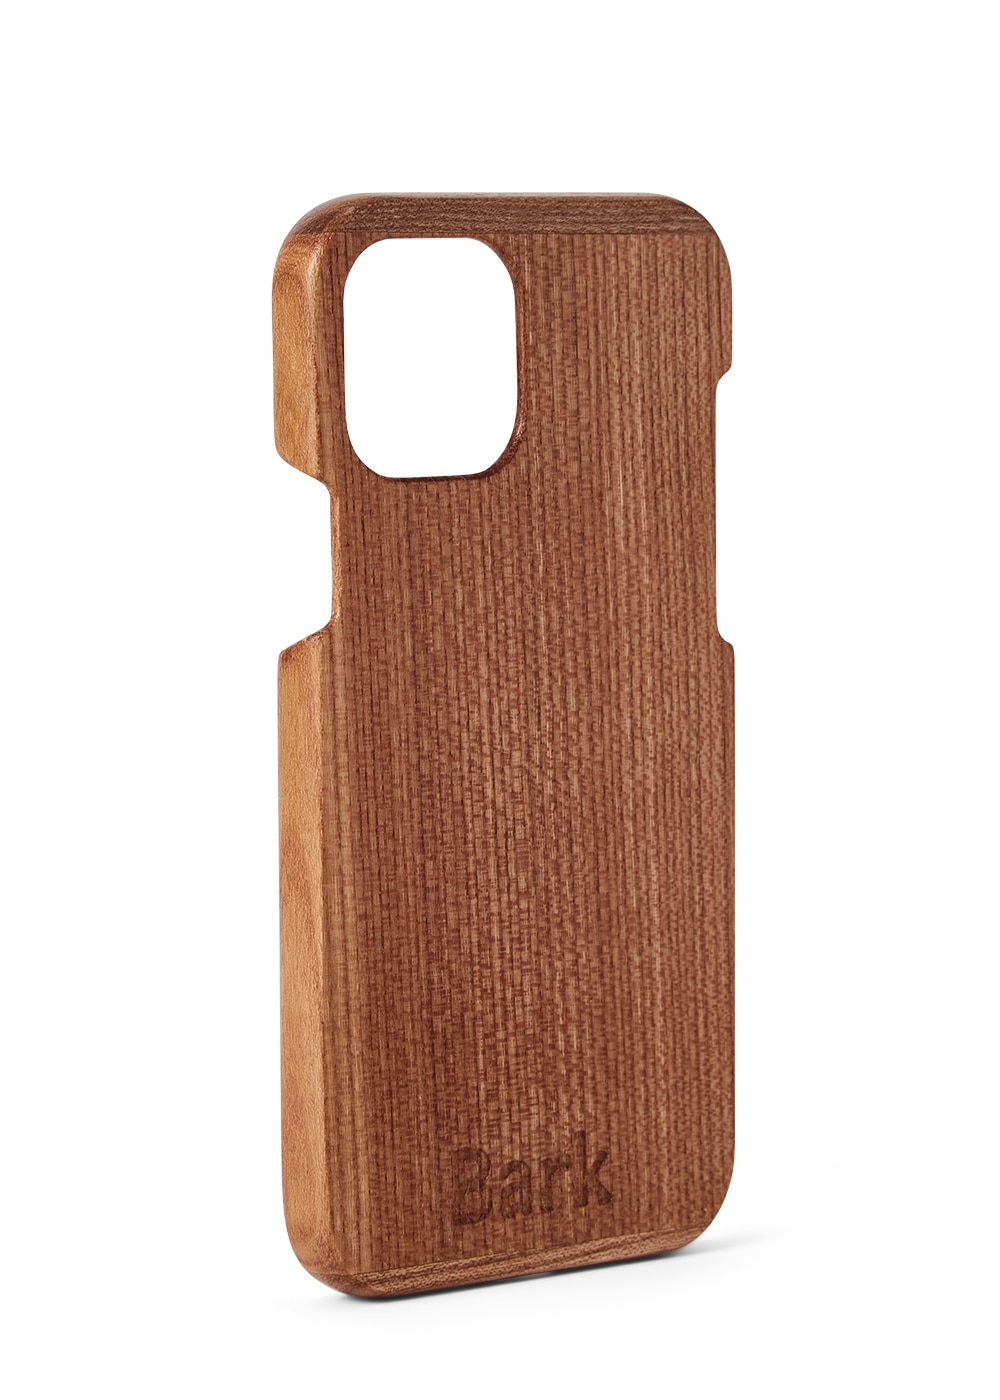 iPhone 12 coque en bois de feuillus suédois - Alm